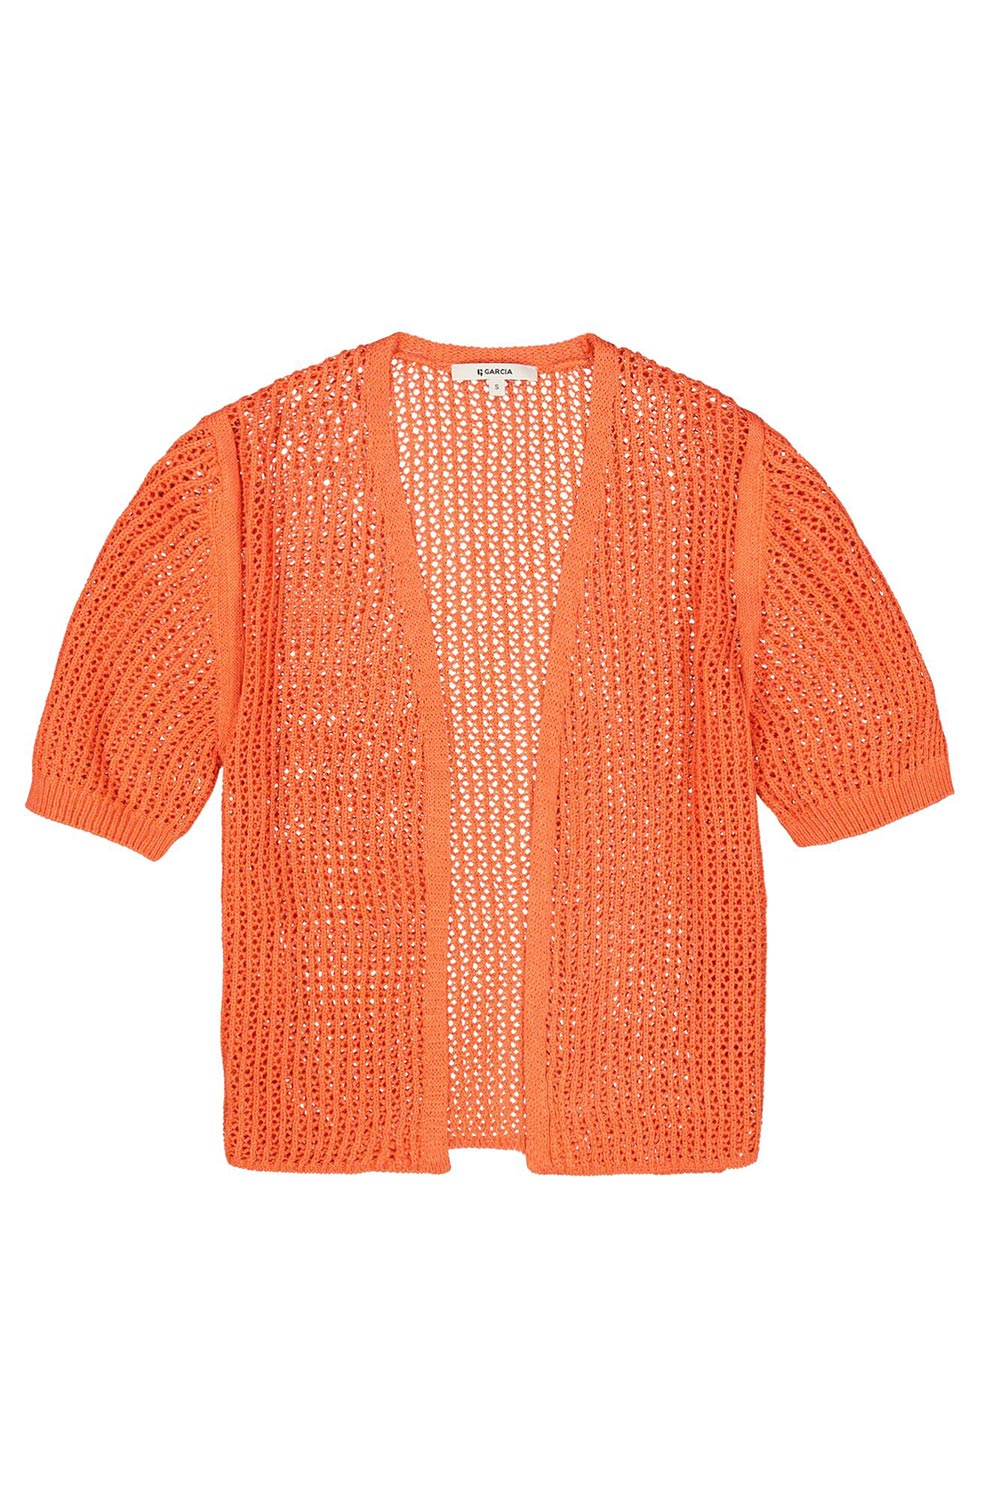 Garcia (P40242) Women's Elbow Sleeve Open Knit Cardigan, with Open Front in Emberglow Orange